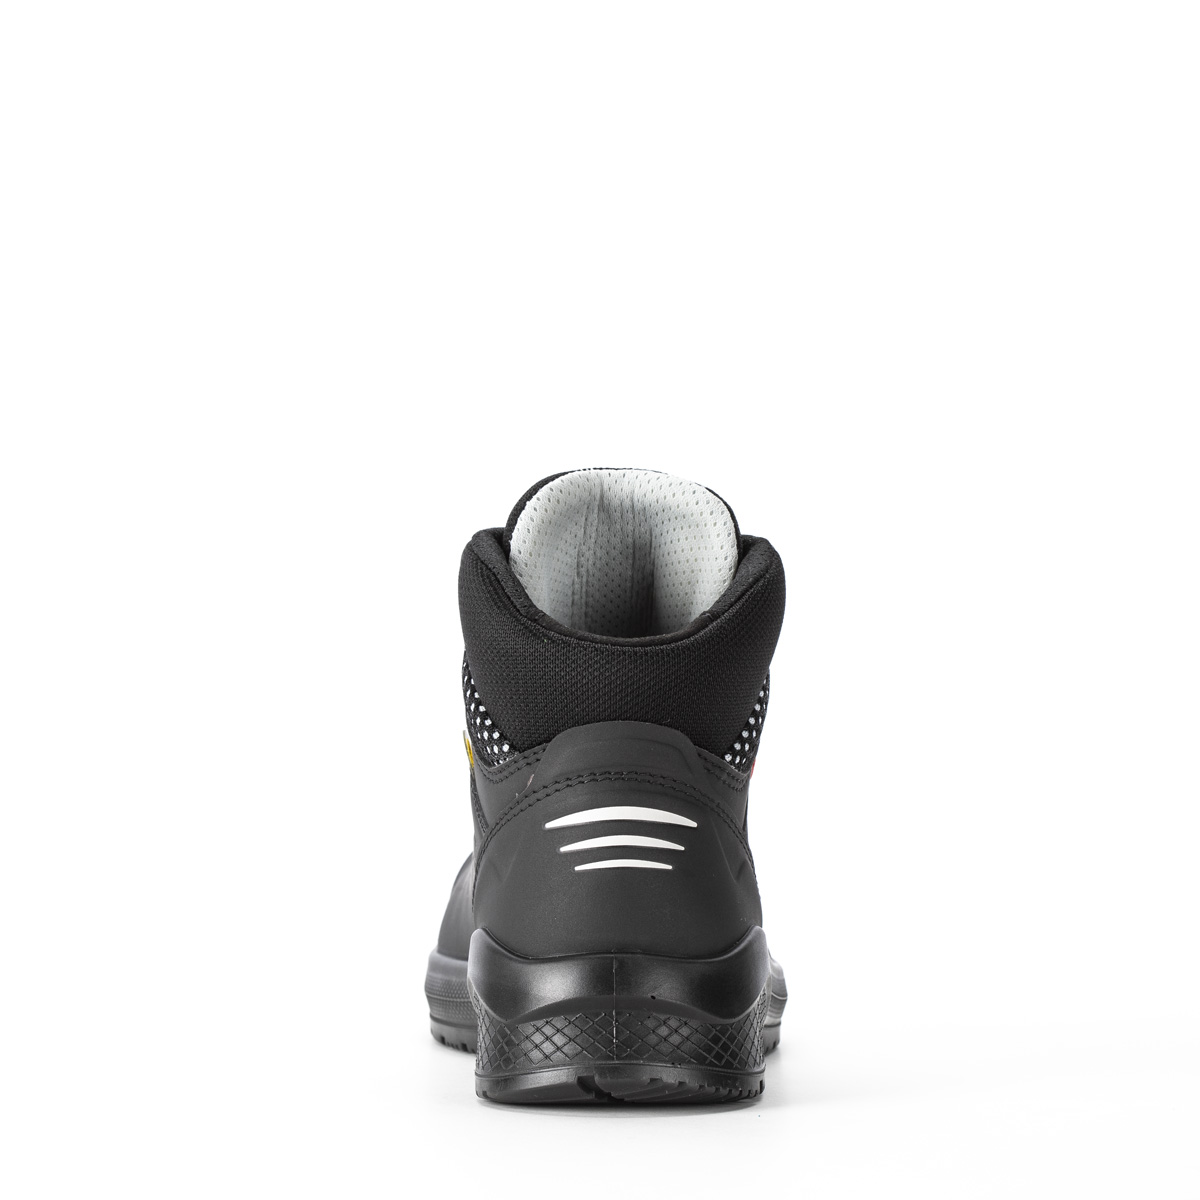 Resolute FORZA HIGH BOA® - Ankle boot con classe di protezione S3 